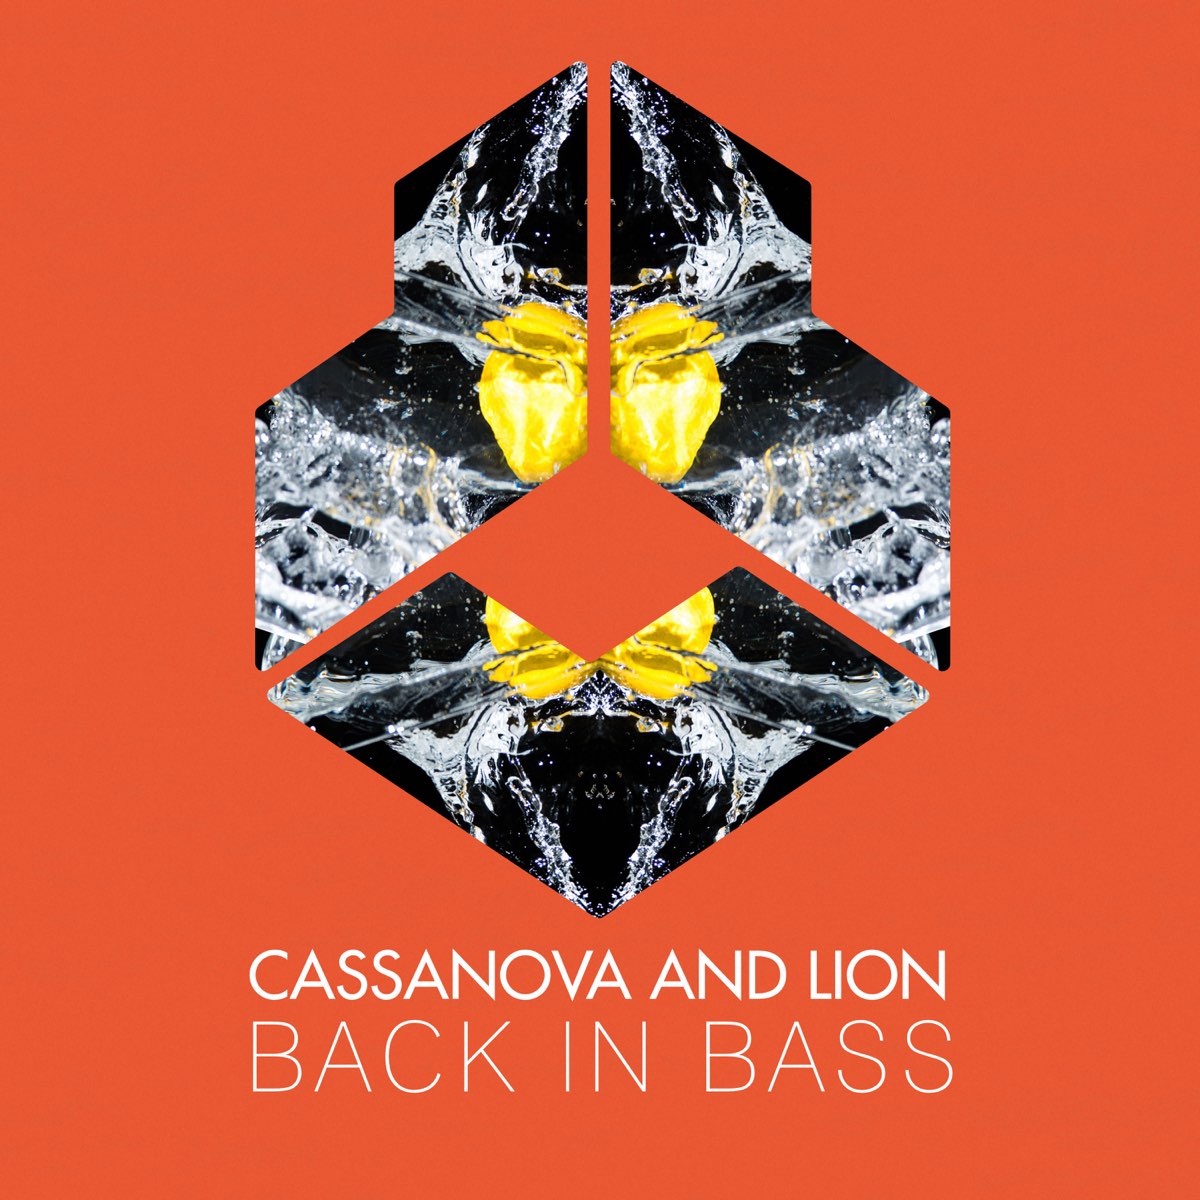 Cassanova. Bass extended mix